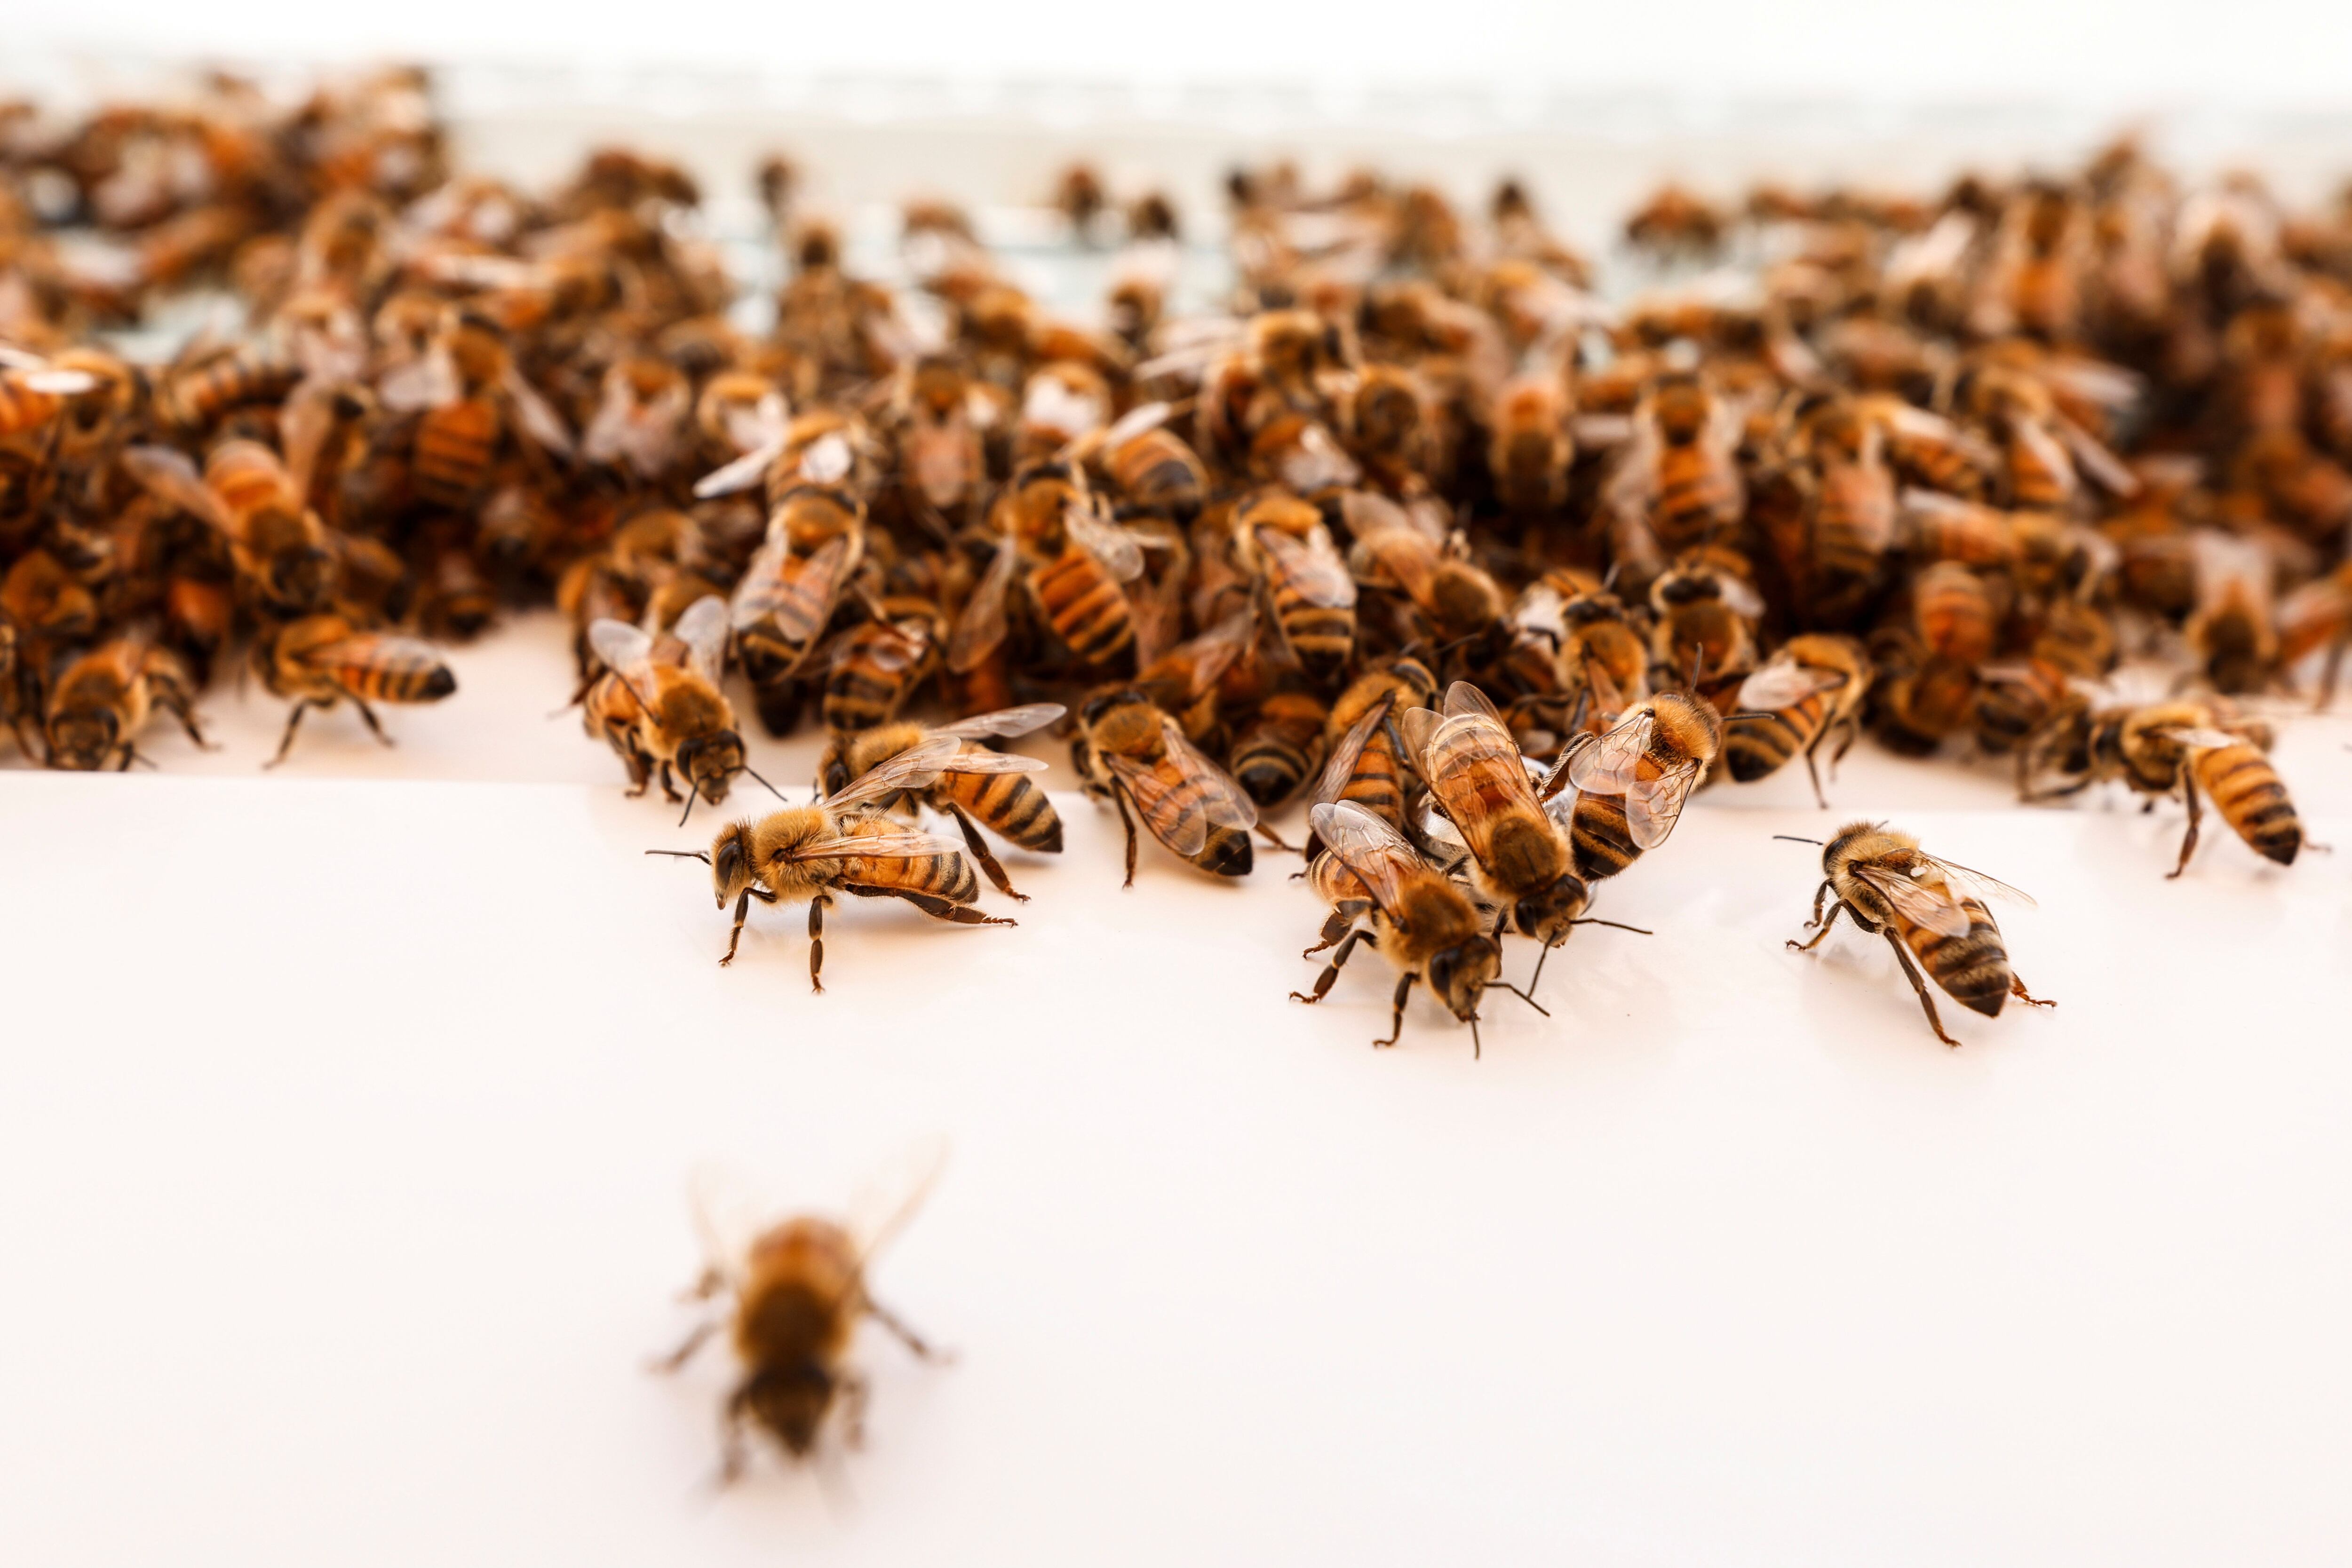 Colmenas robotizadas en Israel para preservar a las abejas – DW – 19/05/2022